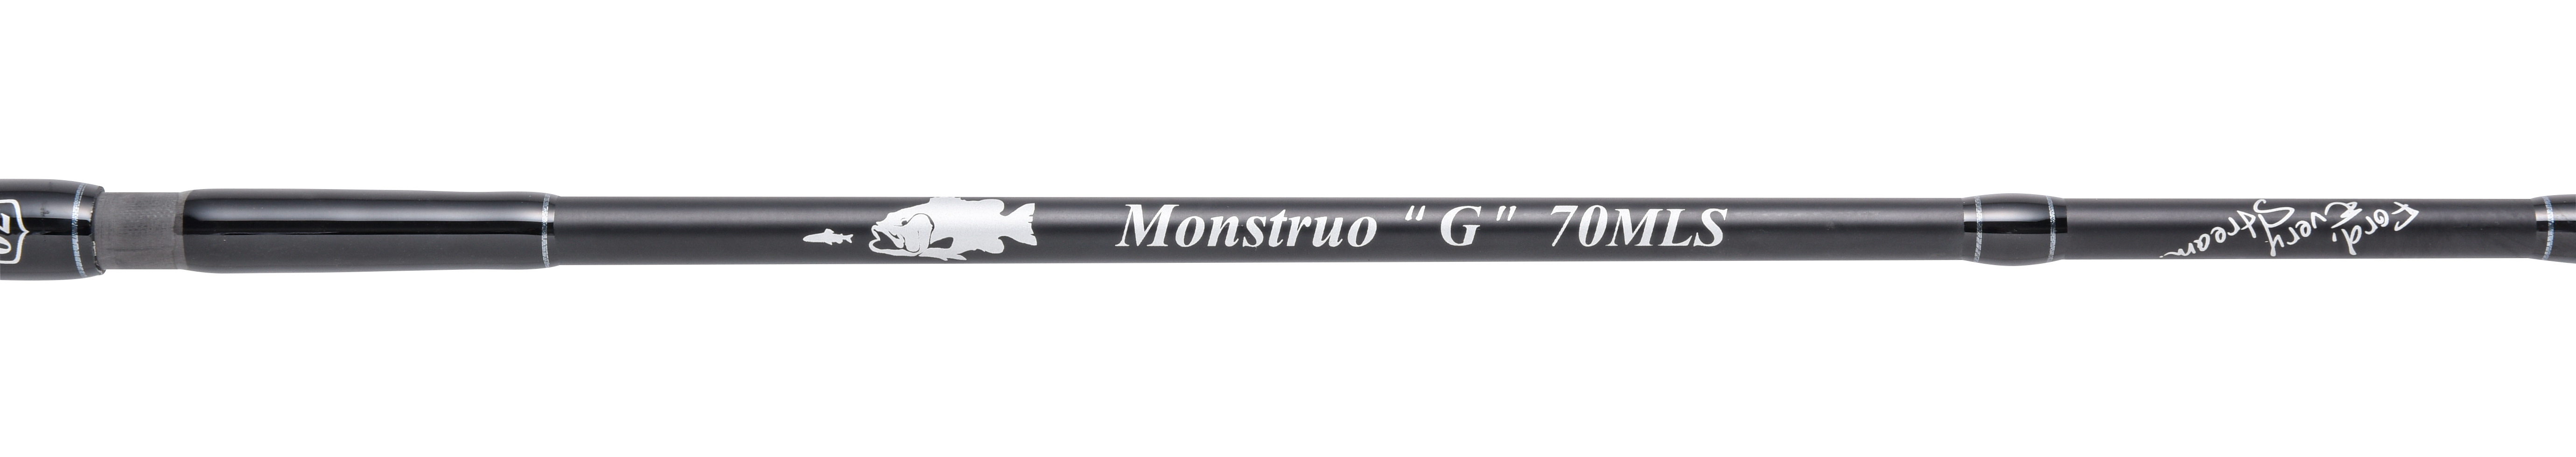 Monstruo”G” 70MLS | グリップ